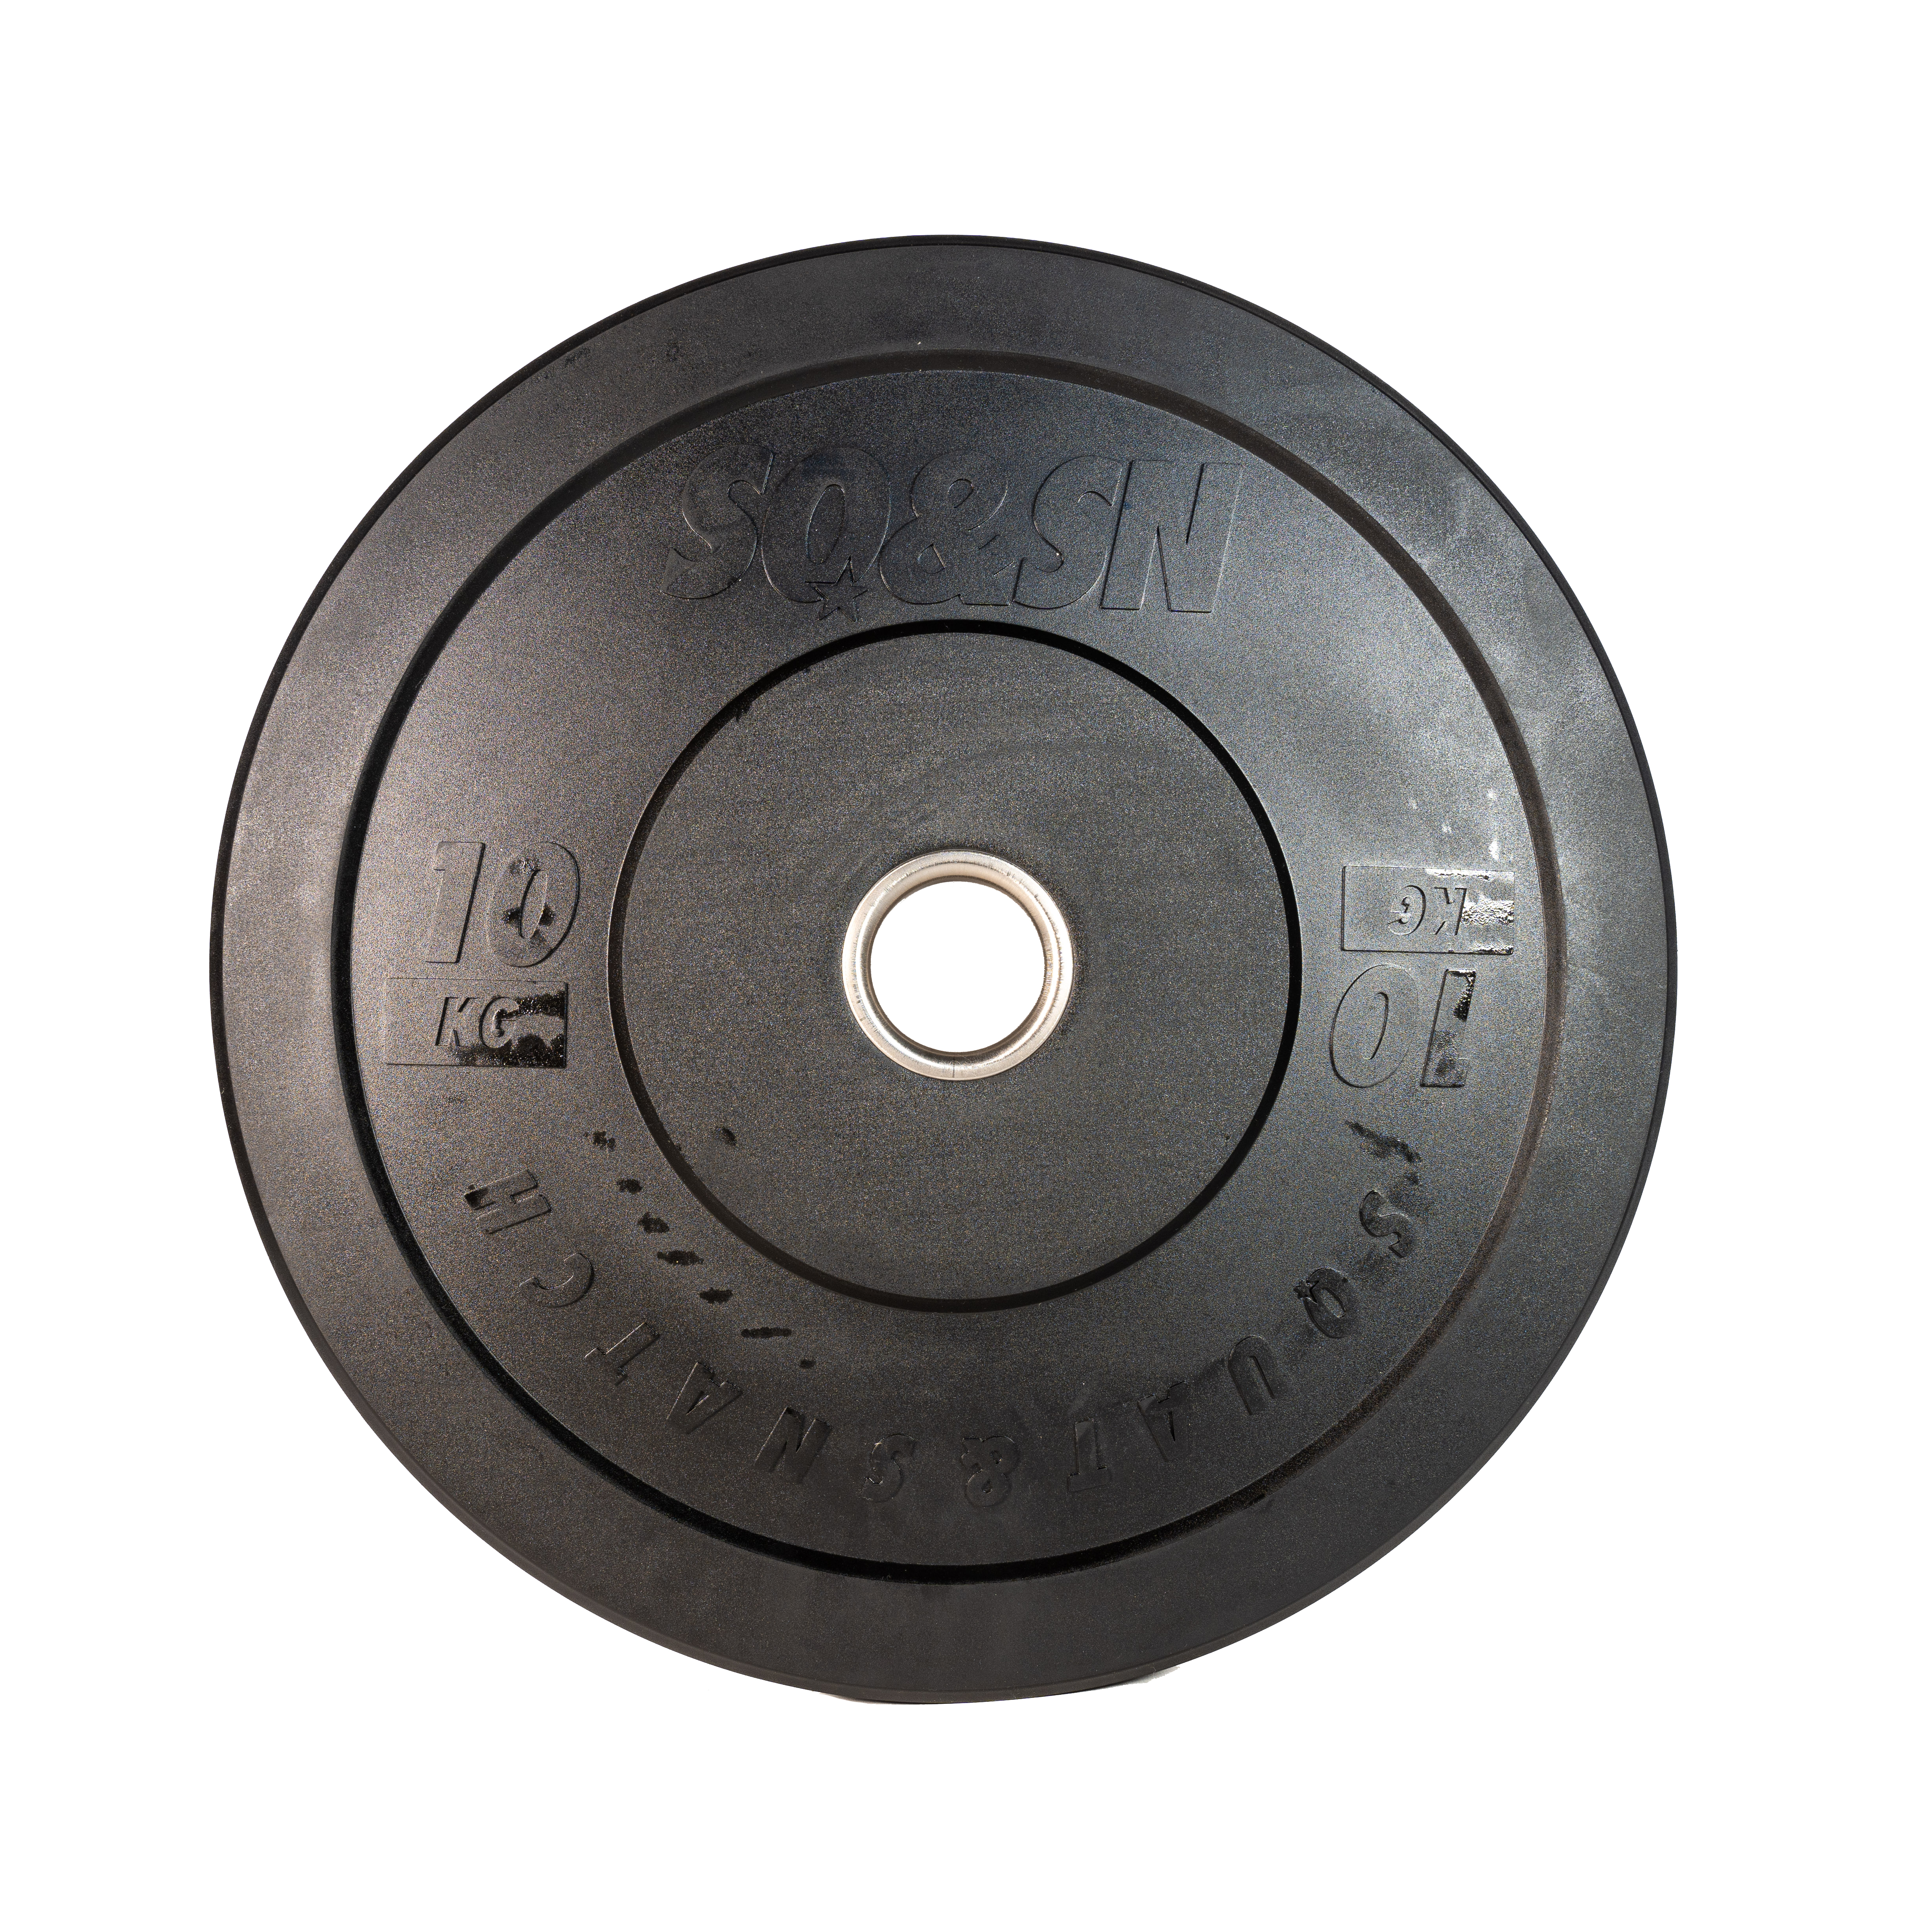 SQ&SN Bumper Plate Vægtskive (10 kg) i sort. Udstyr til styrketræning, vægtløftning og crossfit træning